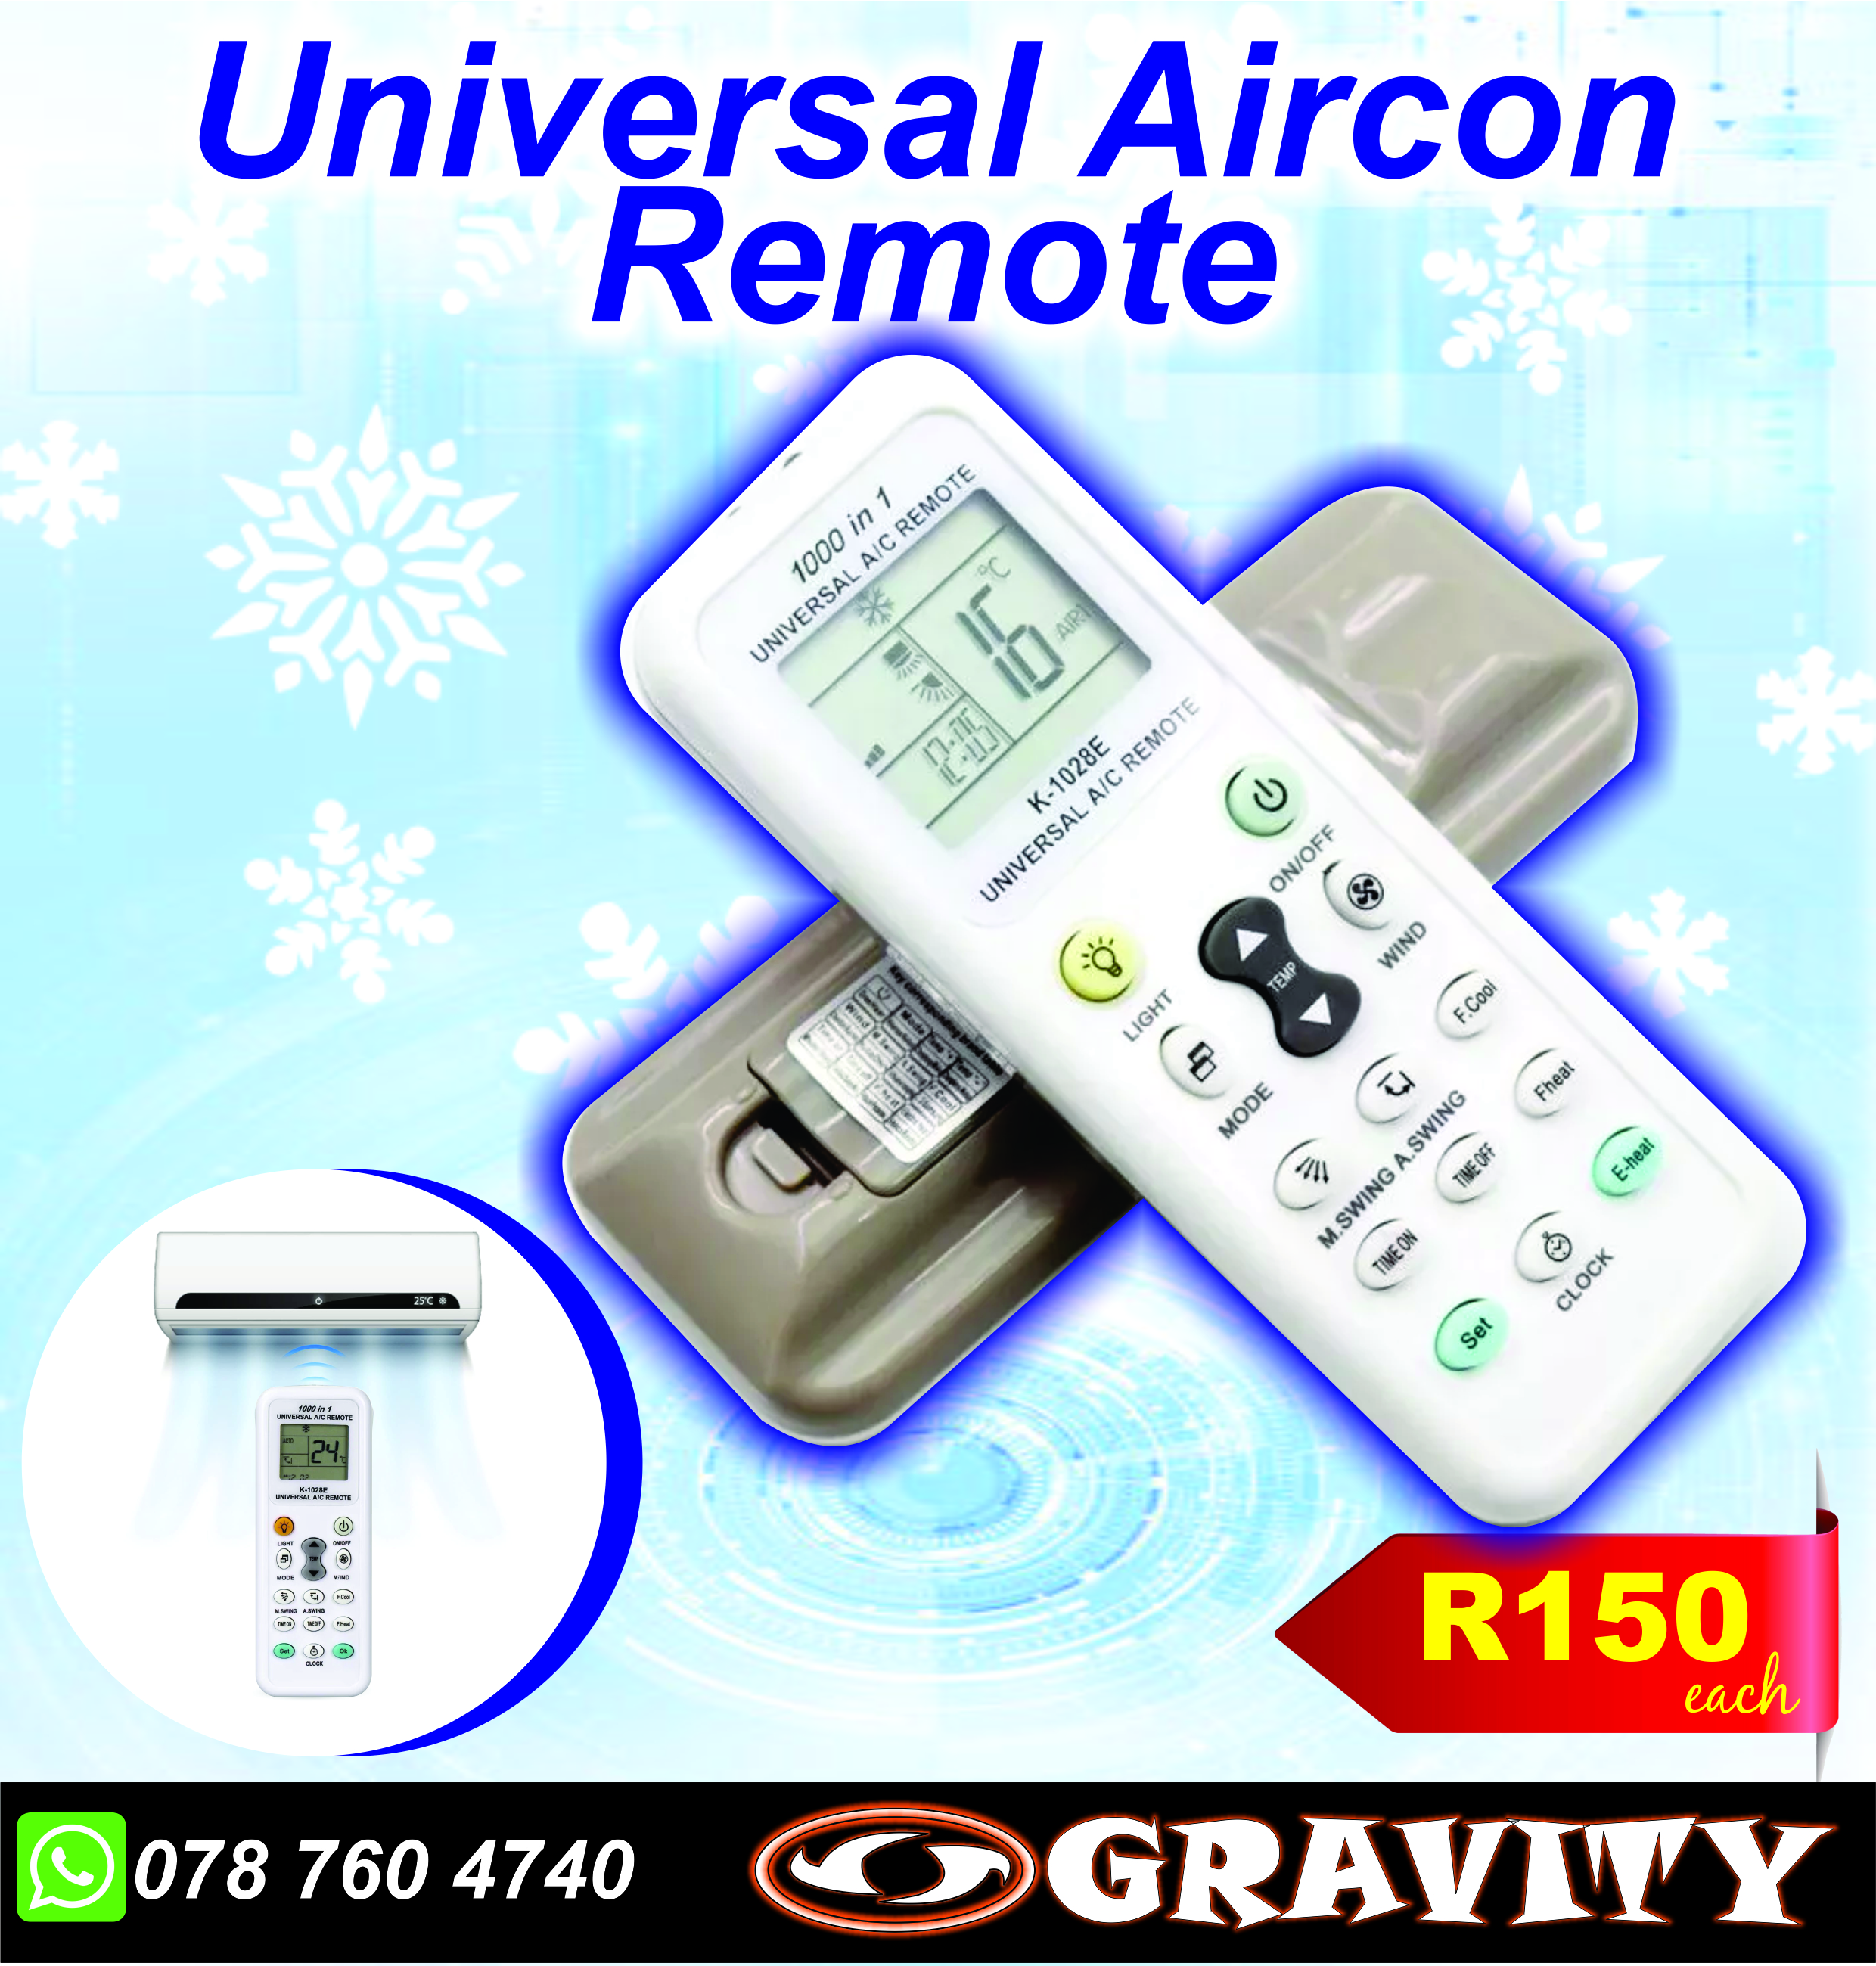 universal aircon remote durban gravity